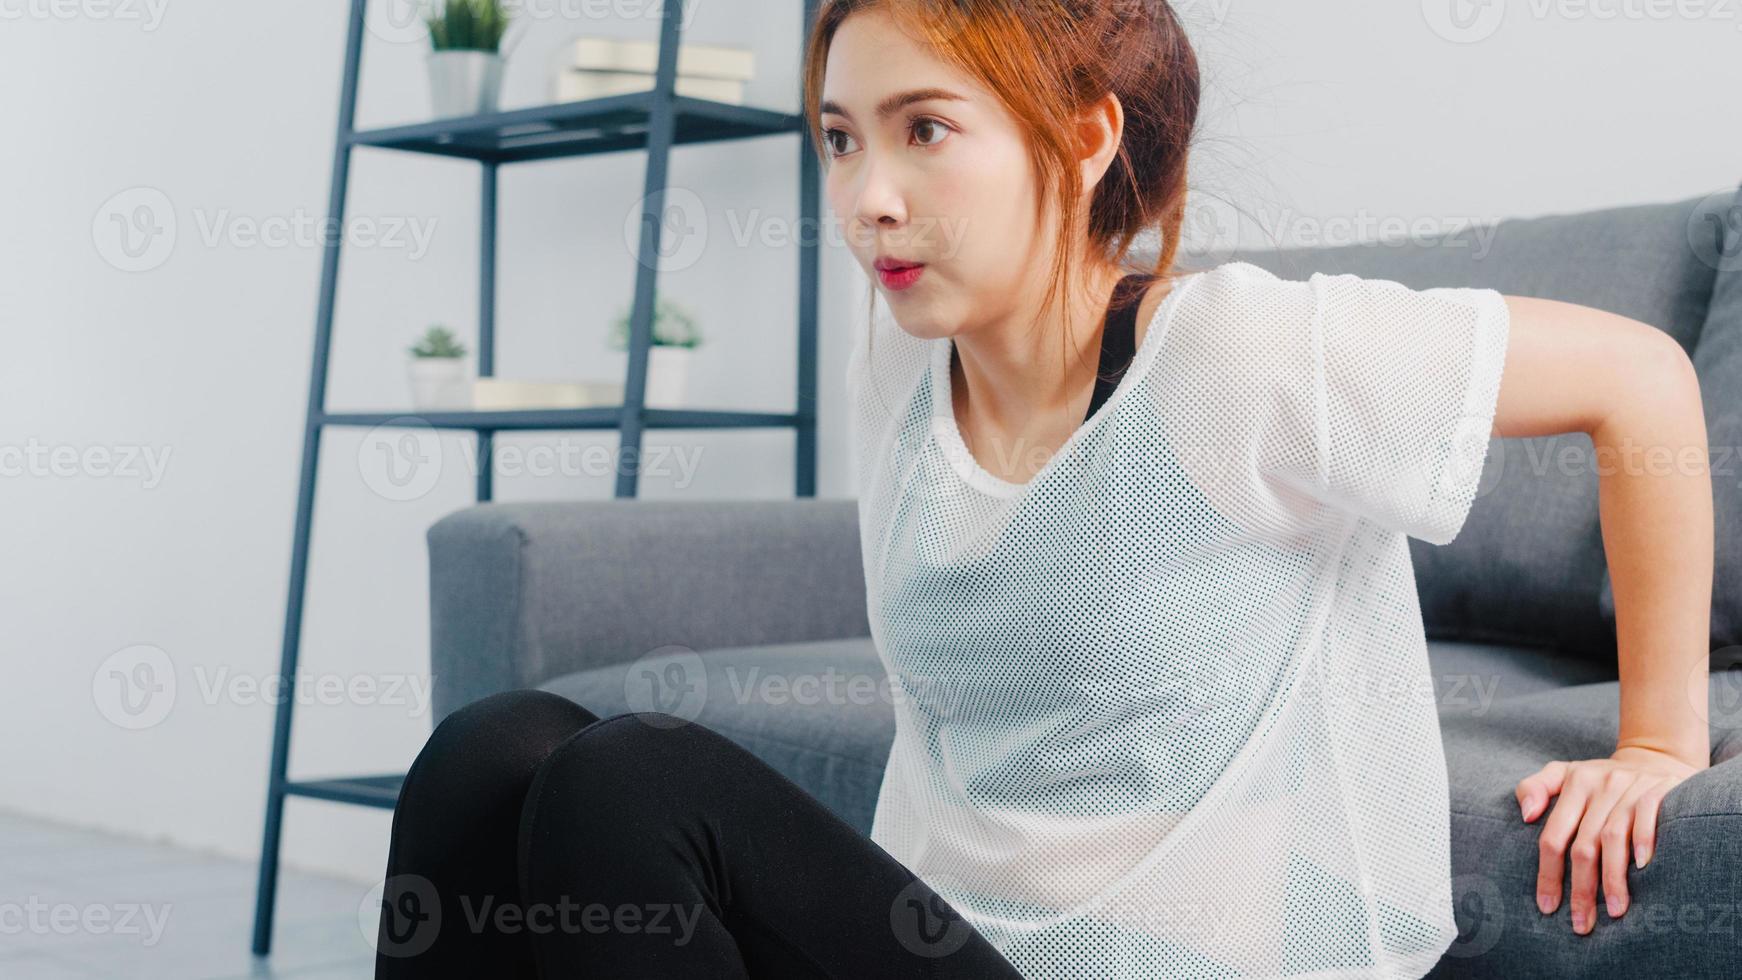 giovane donna coreana in esercizi di abbigliamento sportivo facendo allenamento facendo tuffi tricipiti appoggiata sul divano nel soggiorno di casa. distanza sociale, isolamento durante il virus. esercizi per la parte inferiore del corpo. foto